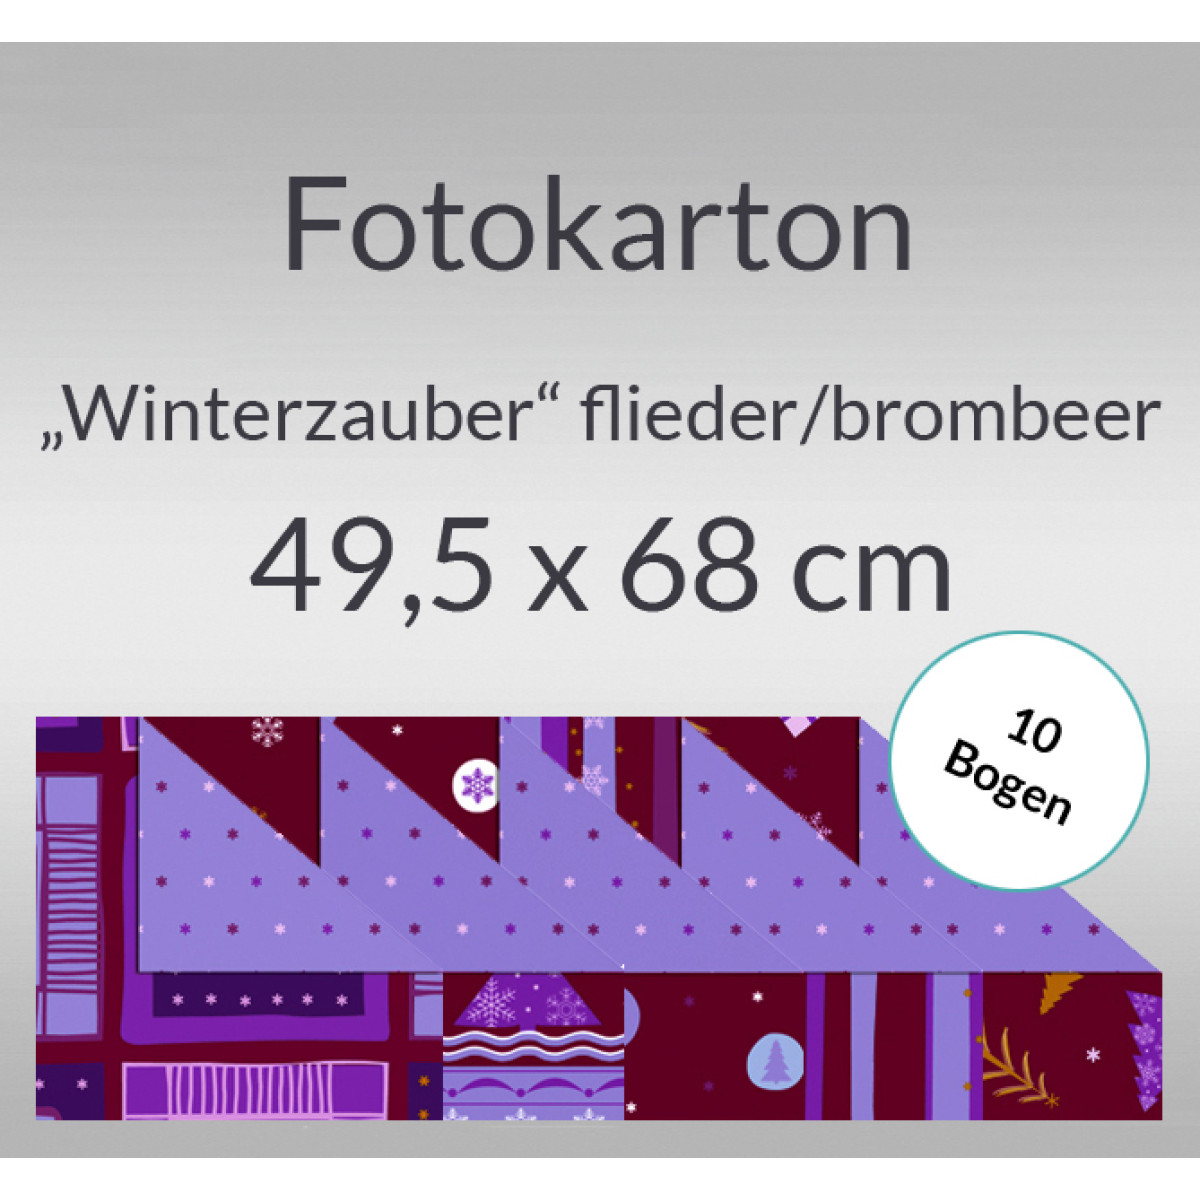 Fotokarton "Winterzauber" flieder/brombeer 49,5 x 68 cm - 10 Bogen